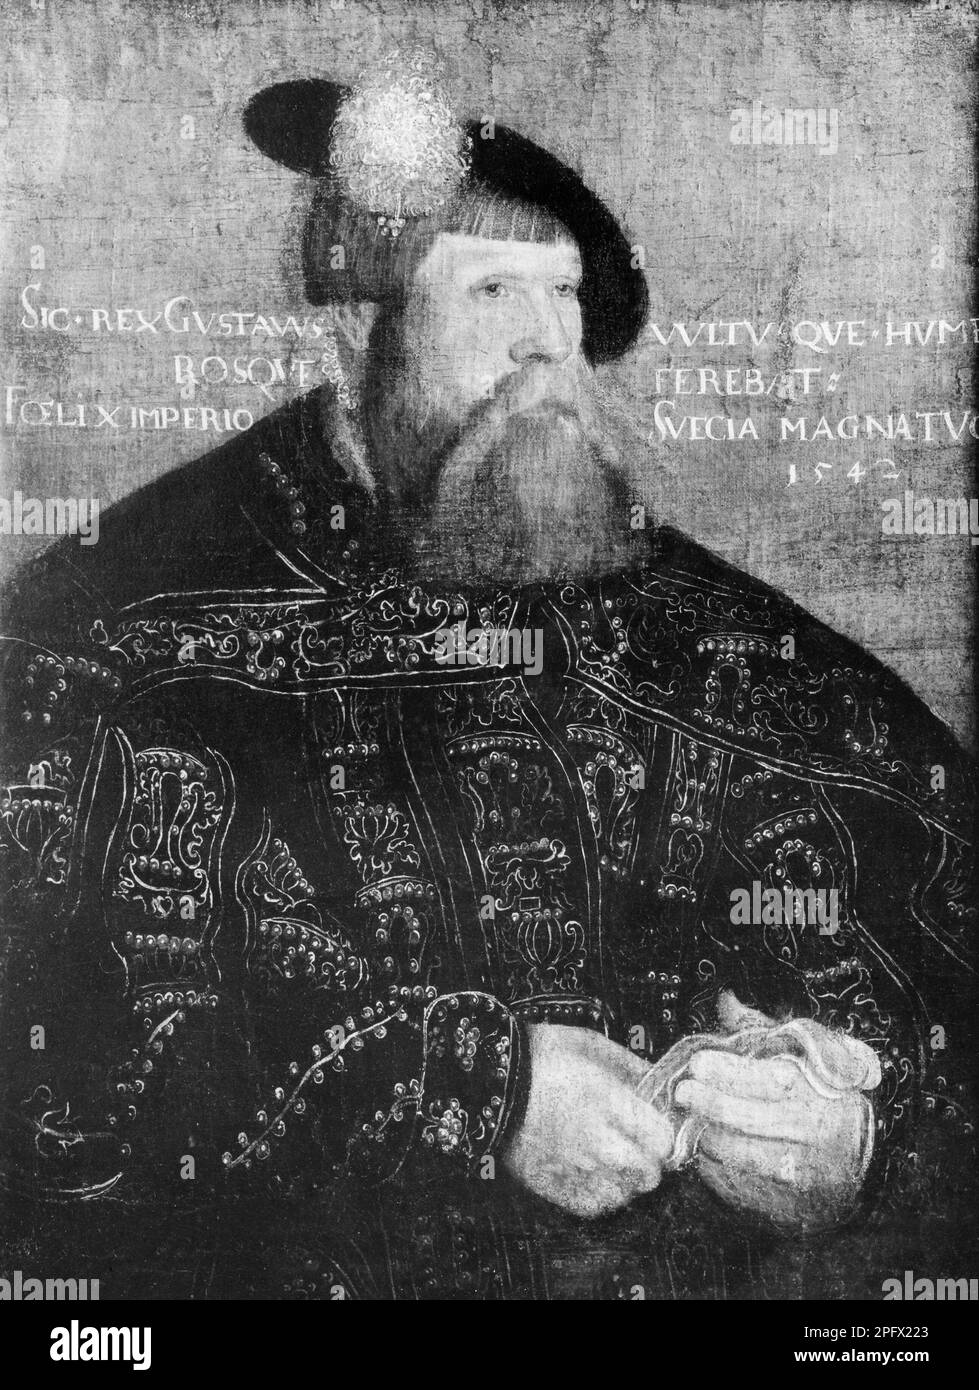 Gustav Vasa, Gustav Eriksson. 12 mai 1496 - 29 septembre 1560. Roi Gustav I de Suède de la famille noble Vasa. photo noir et blanc d'un tableau fait 1542 de lui par Jakob Binck (1485-1568) Banque D'Images